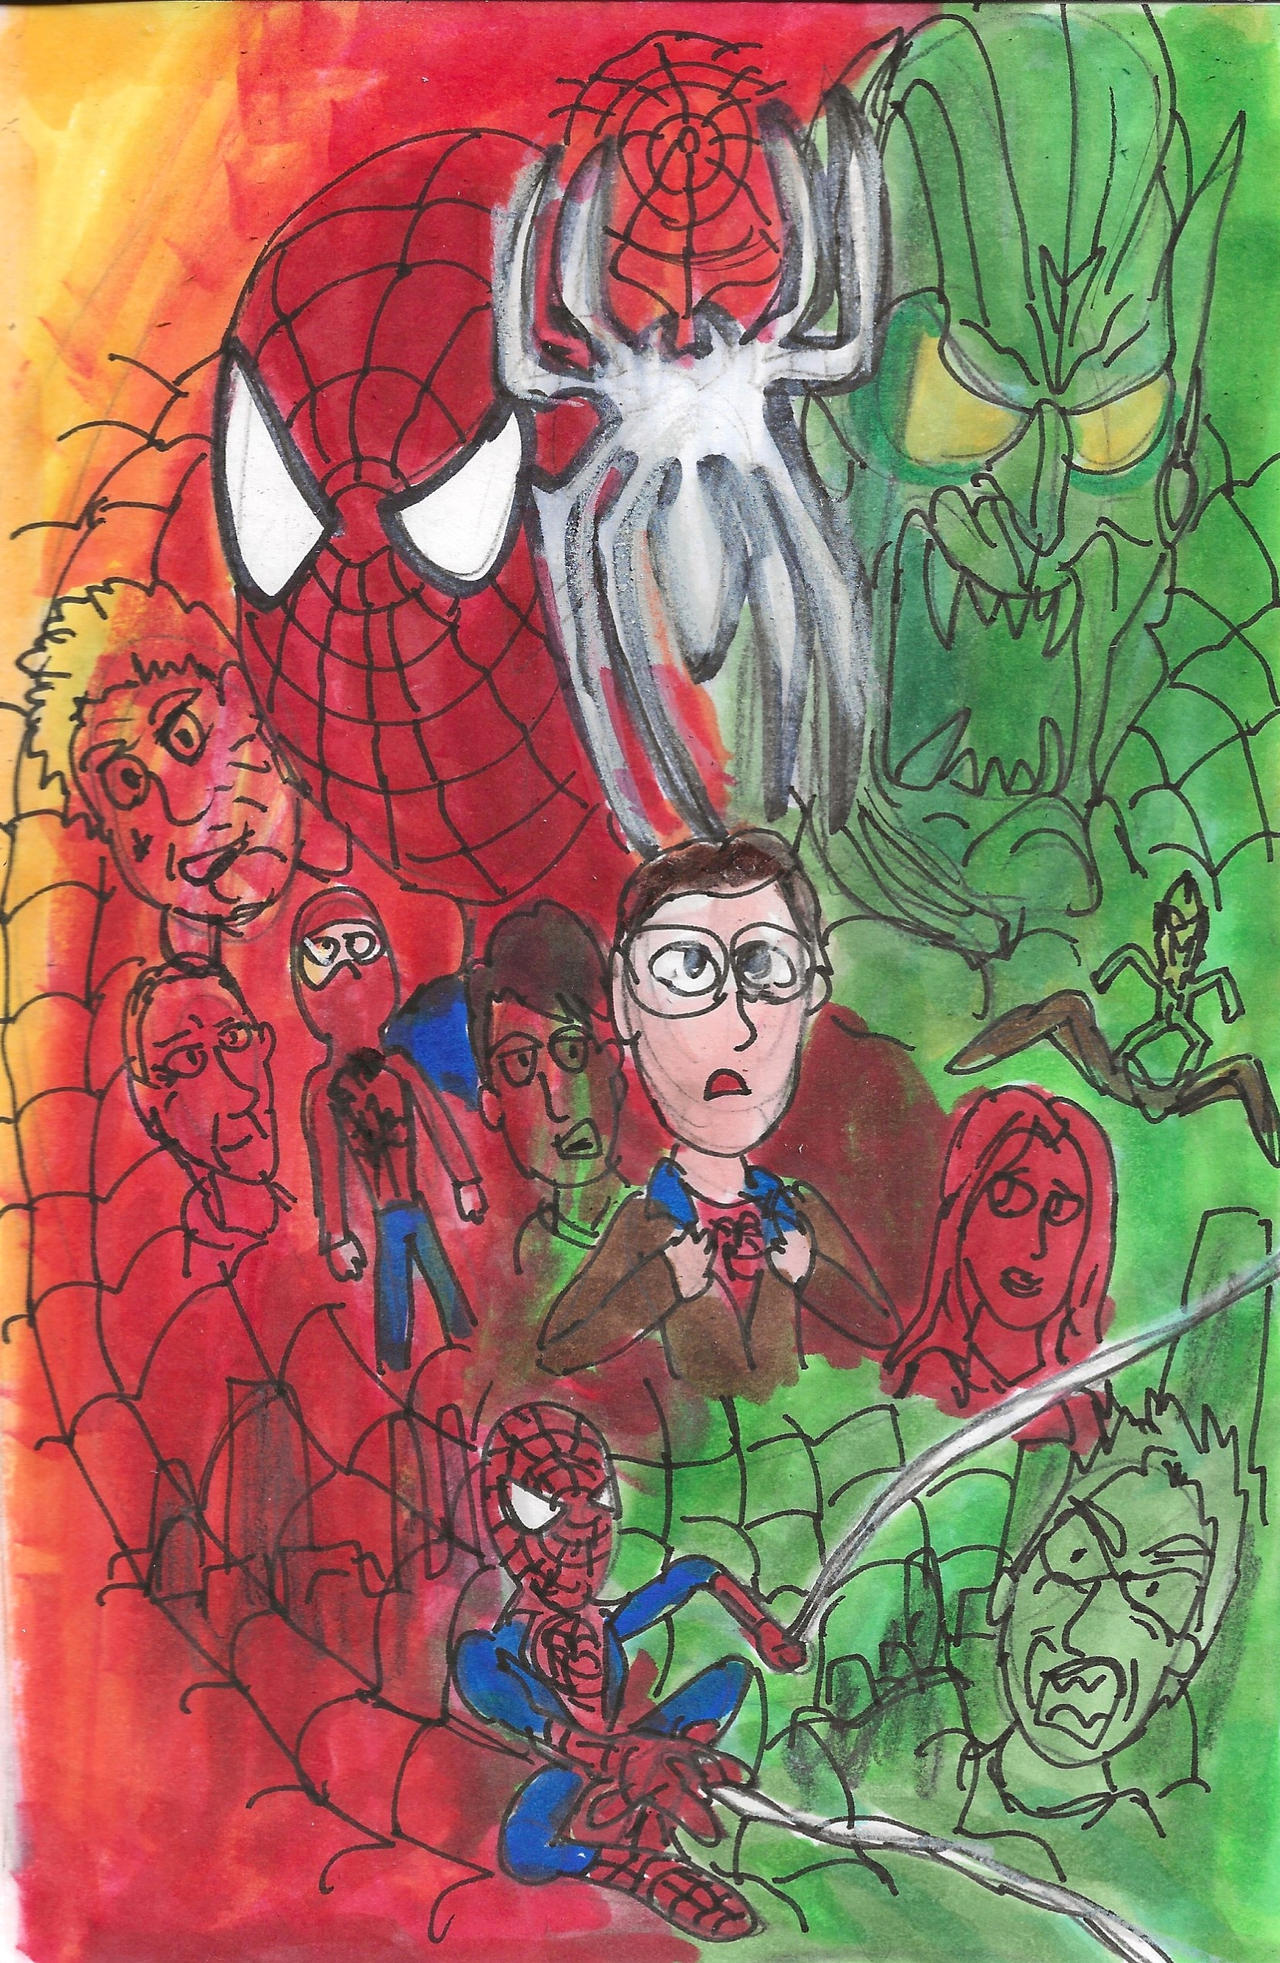 Spider-Man 2002 The Movie by SonicClone on DeviantArt